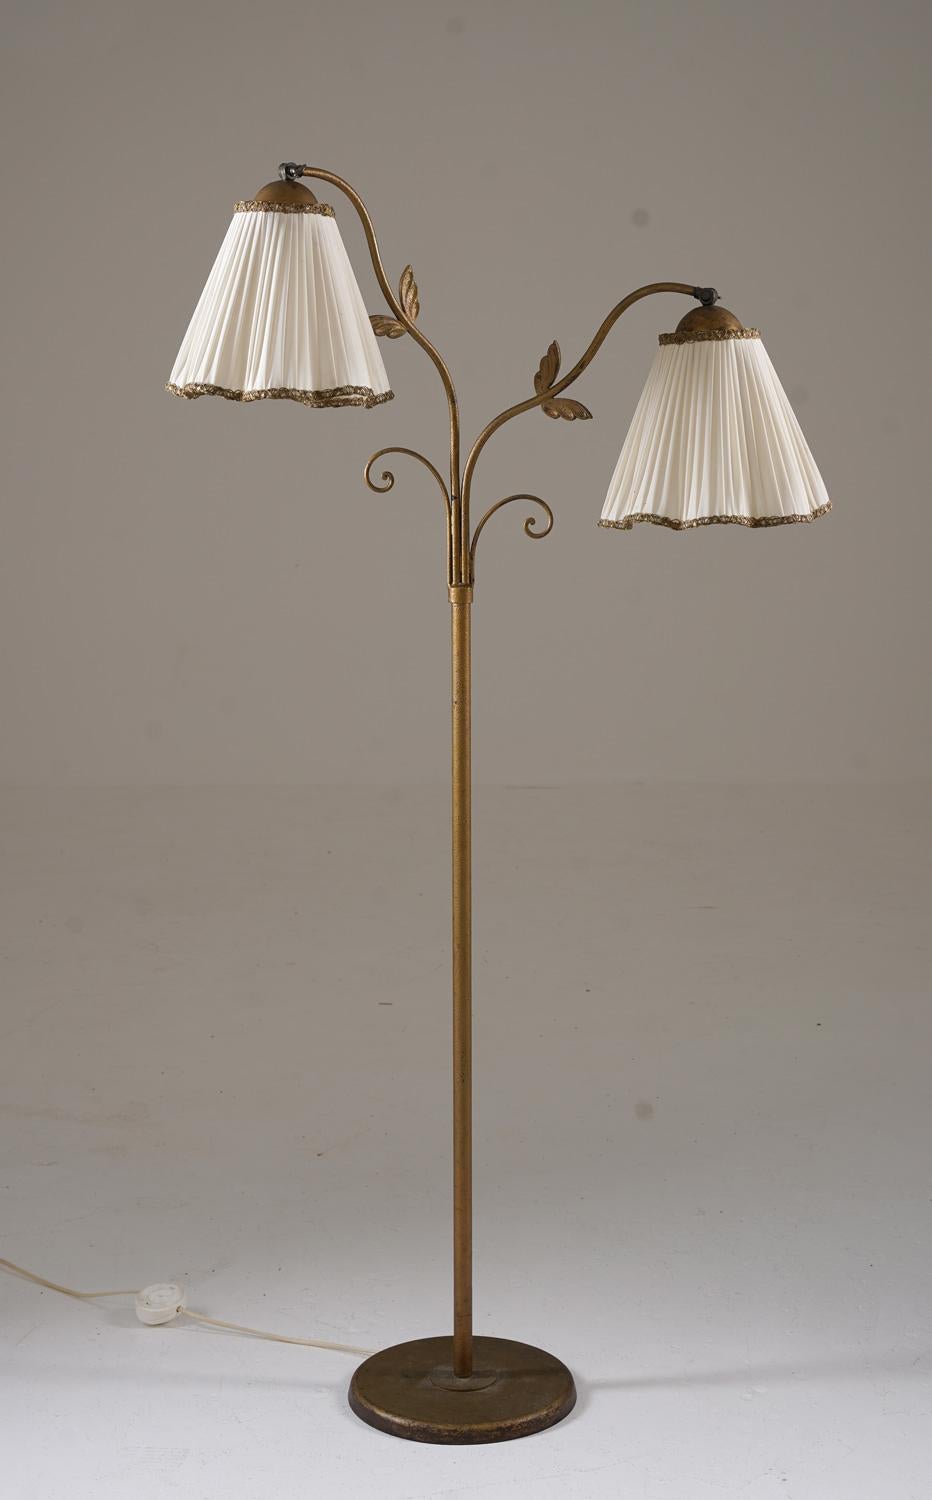 Seltene Stehleuchte von Tor Wolfenstein für Ditzingers, Schweden, 1930er Jahre.
Diese spektakuläre Stehlampe ist ein interessantes Beispiel für schwedisches Design aus den Anfängen der Moderne, das organische Formen mit floralen Ornamenten und